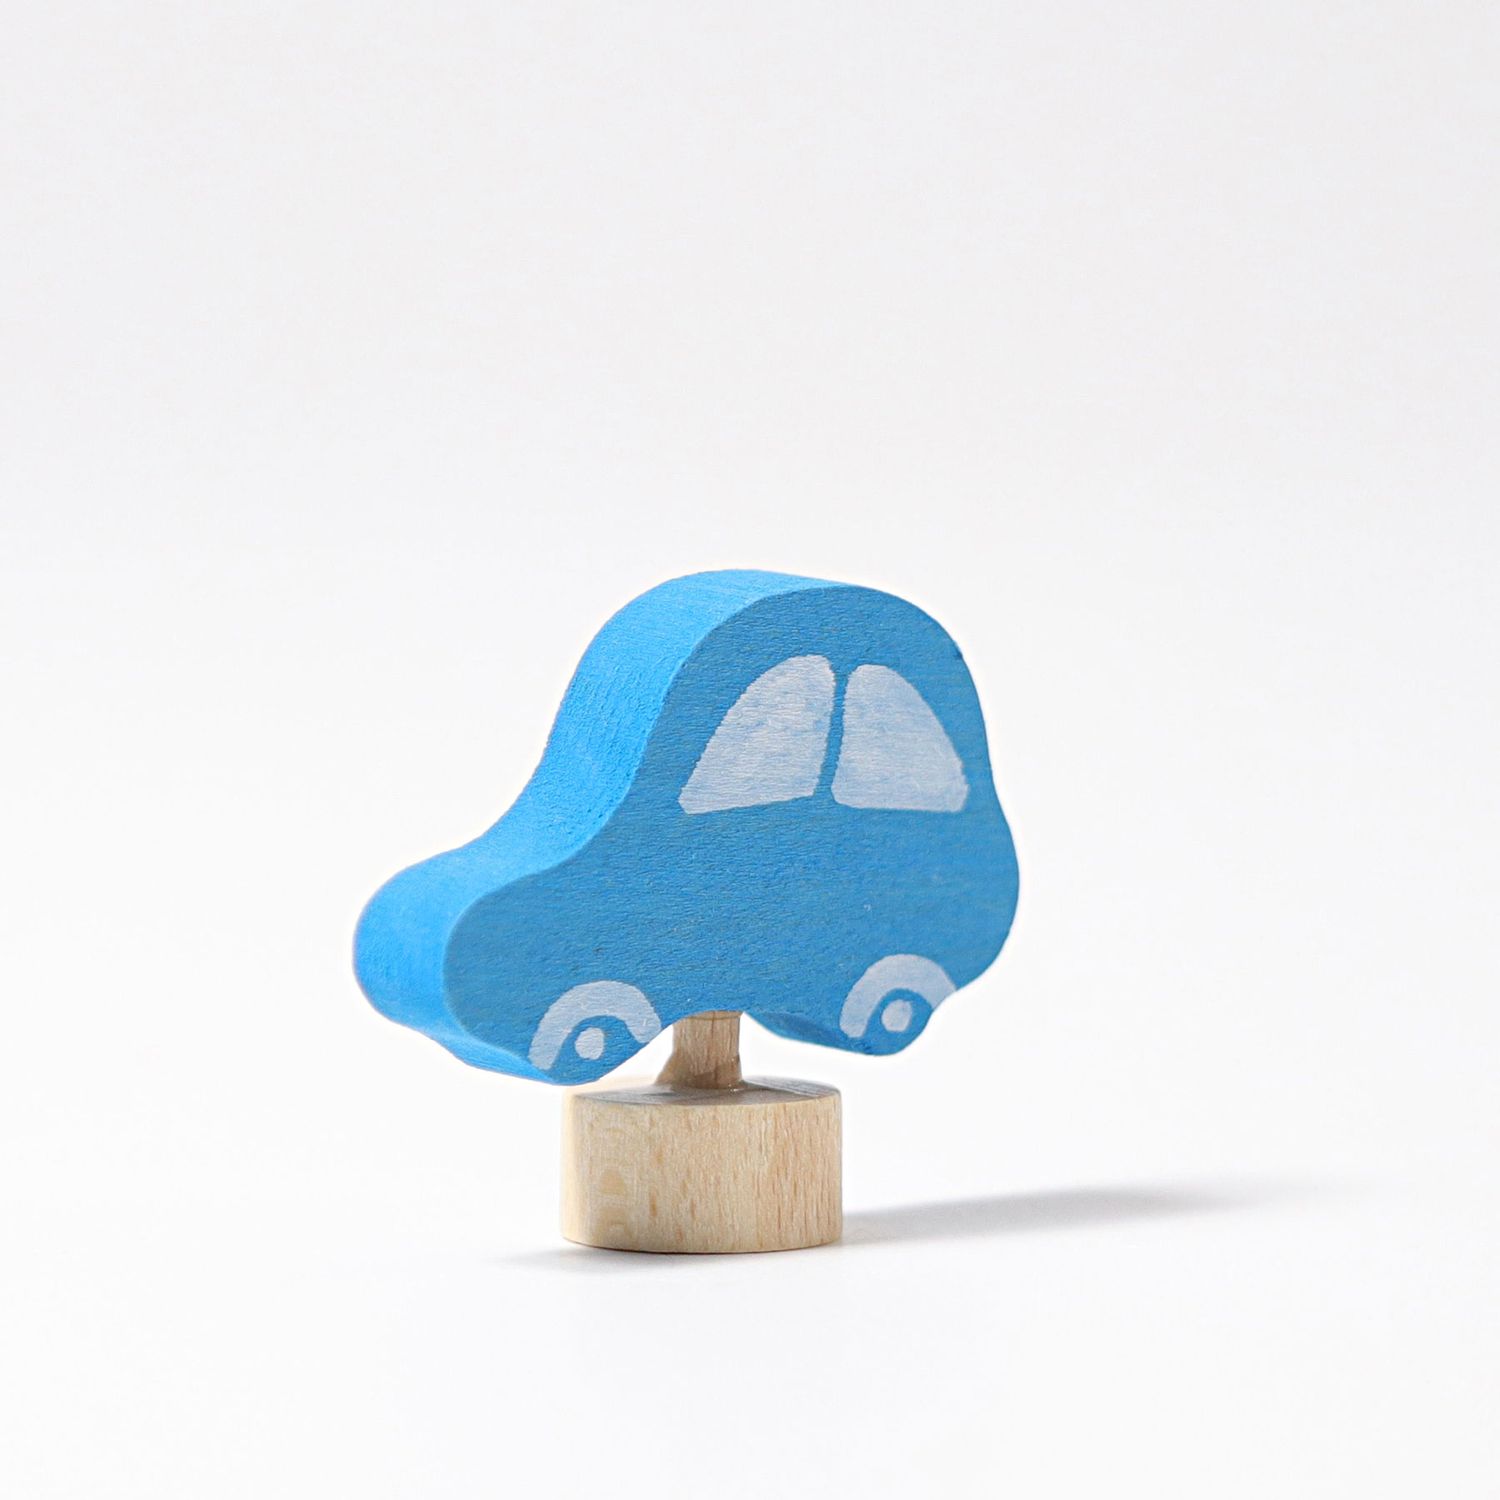 Figurine à assembler Grimm`s voiture bleue